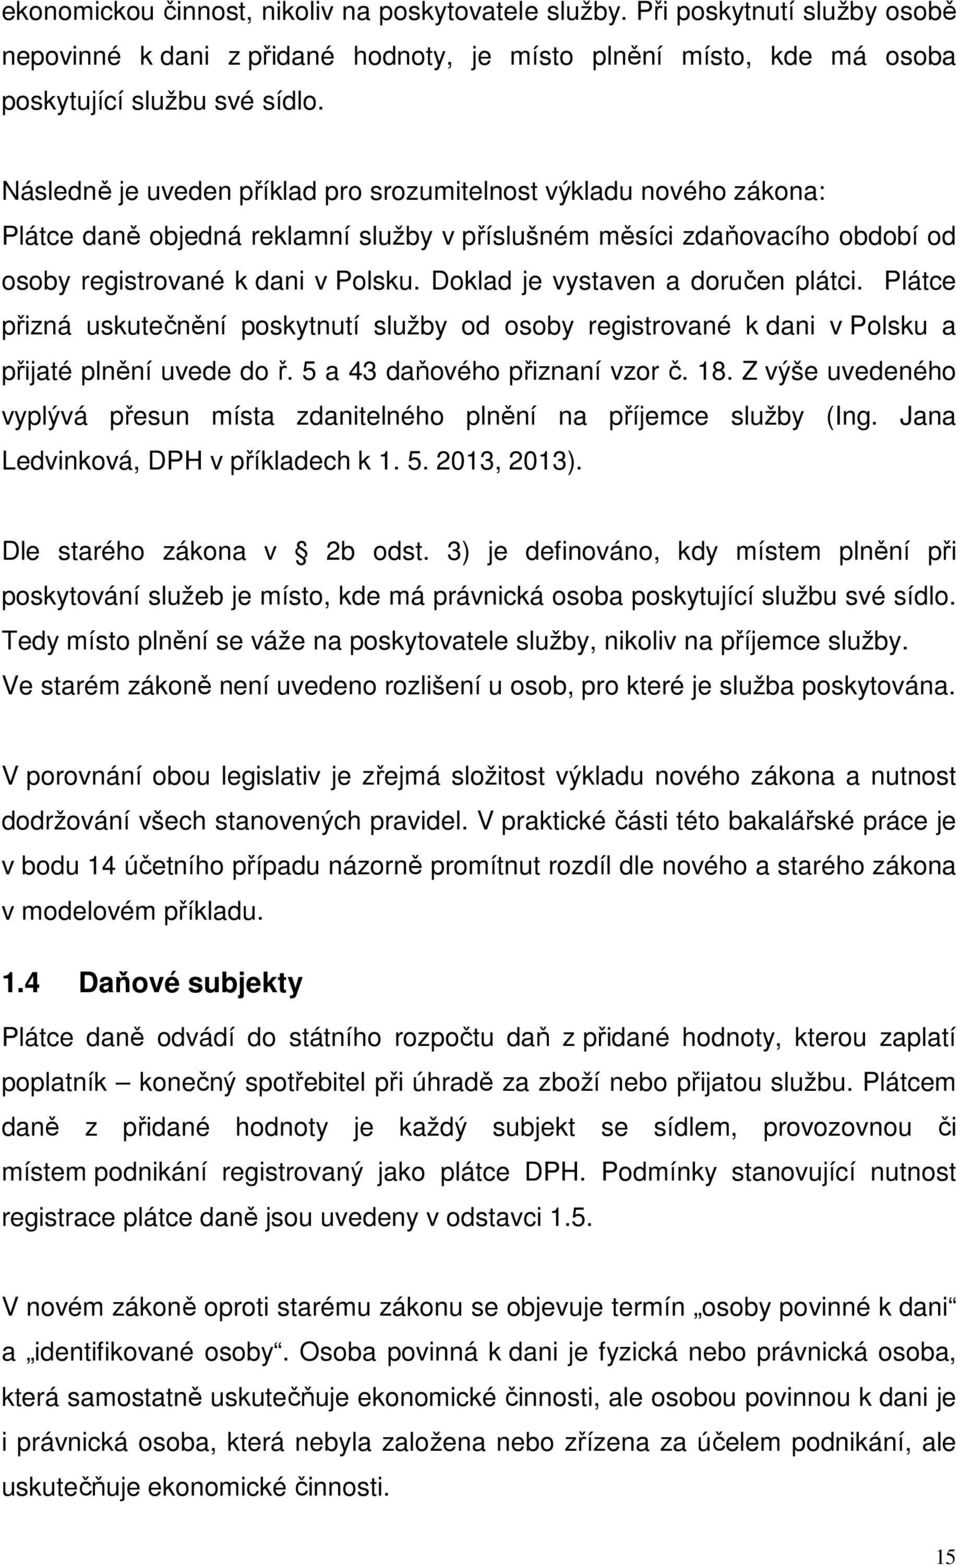 Doklad je vystaven a doručen plátci. Plátce přizná uskutečnění poskytnutí služby od osoby registrované k dani v Polsku a přijaté plnění uvede do ř. 5 a 43 daňového přiznaní vzor č. 18.